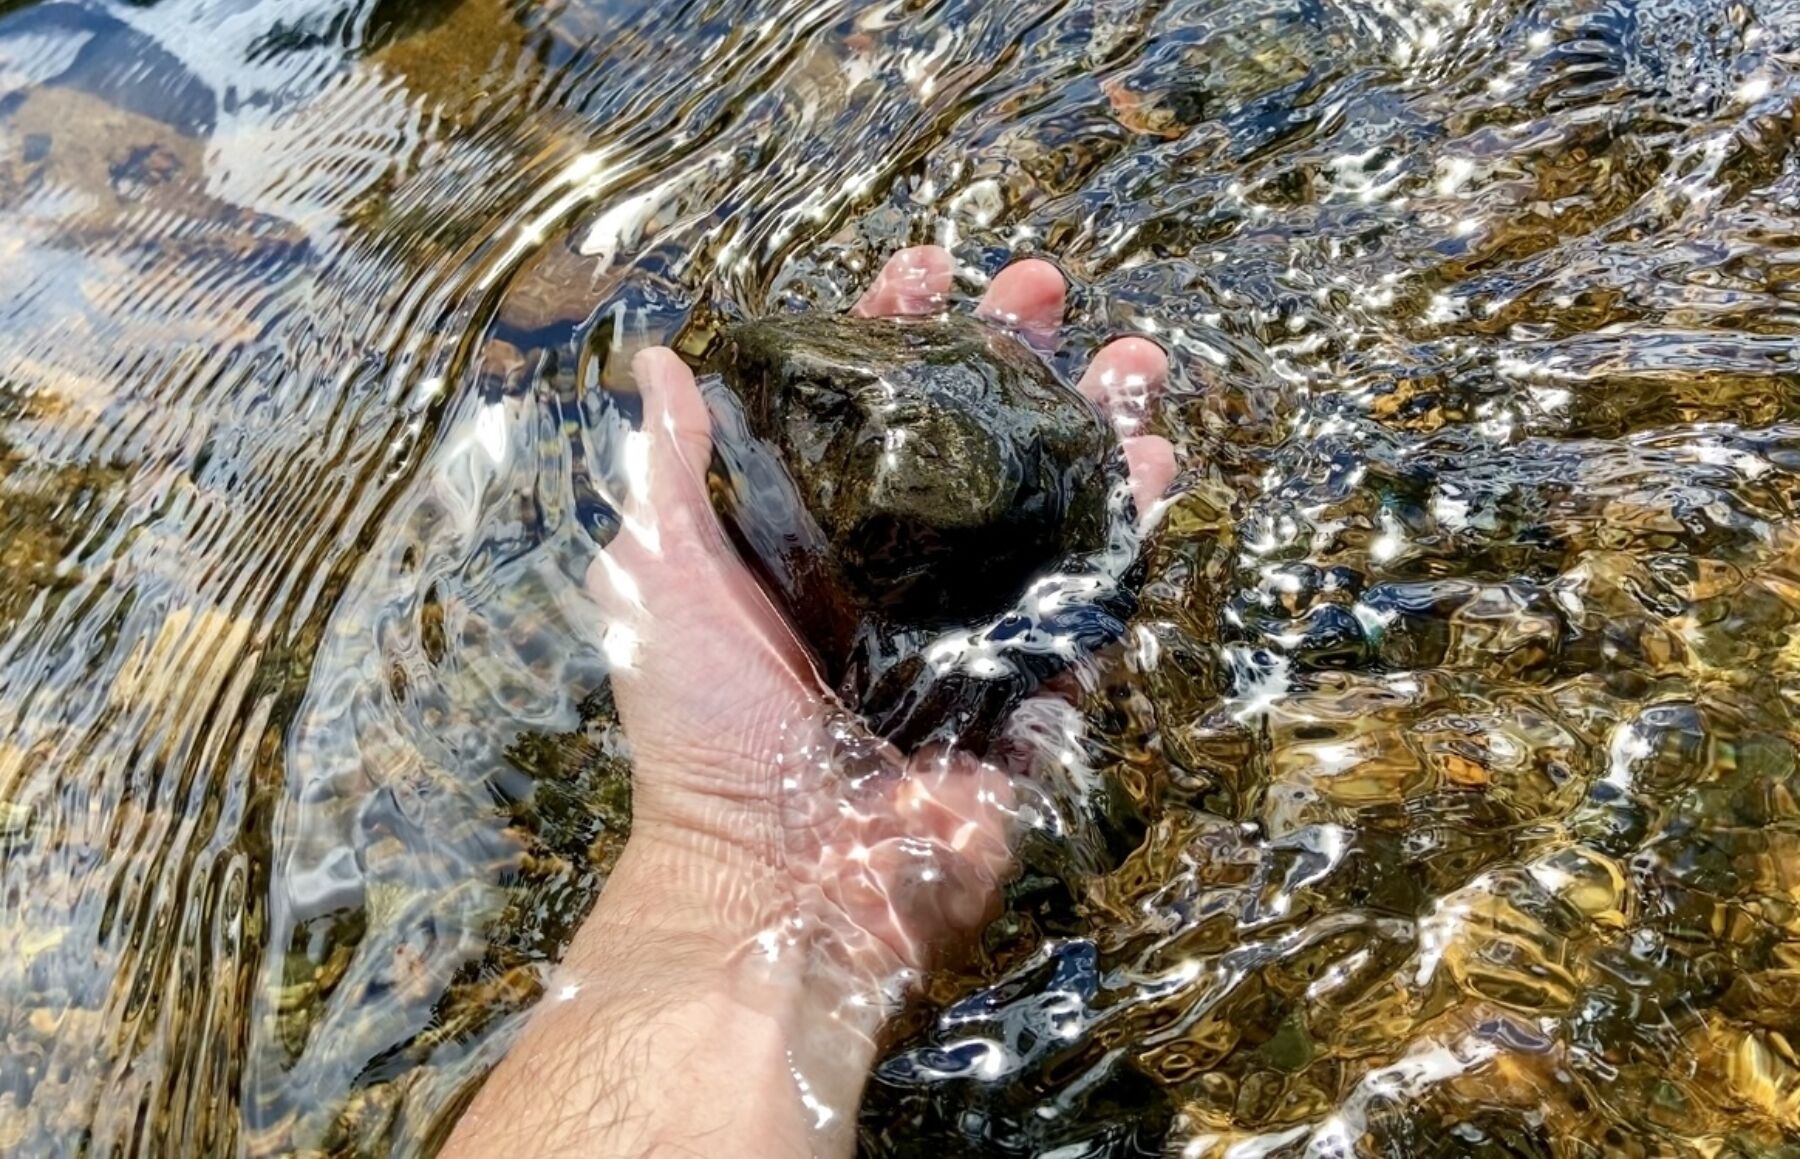 En hånd ligger i vannet og holder i en stein.